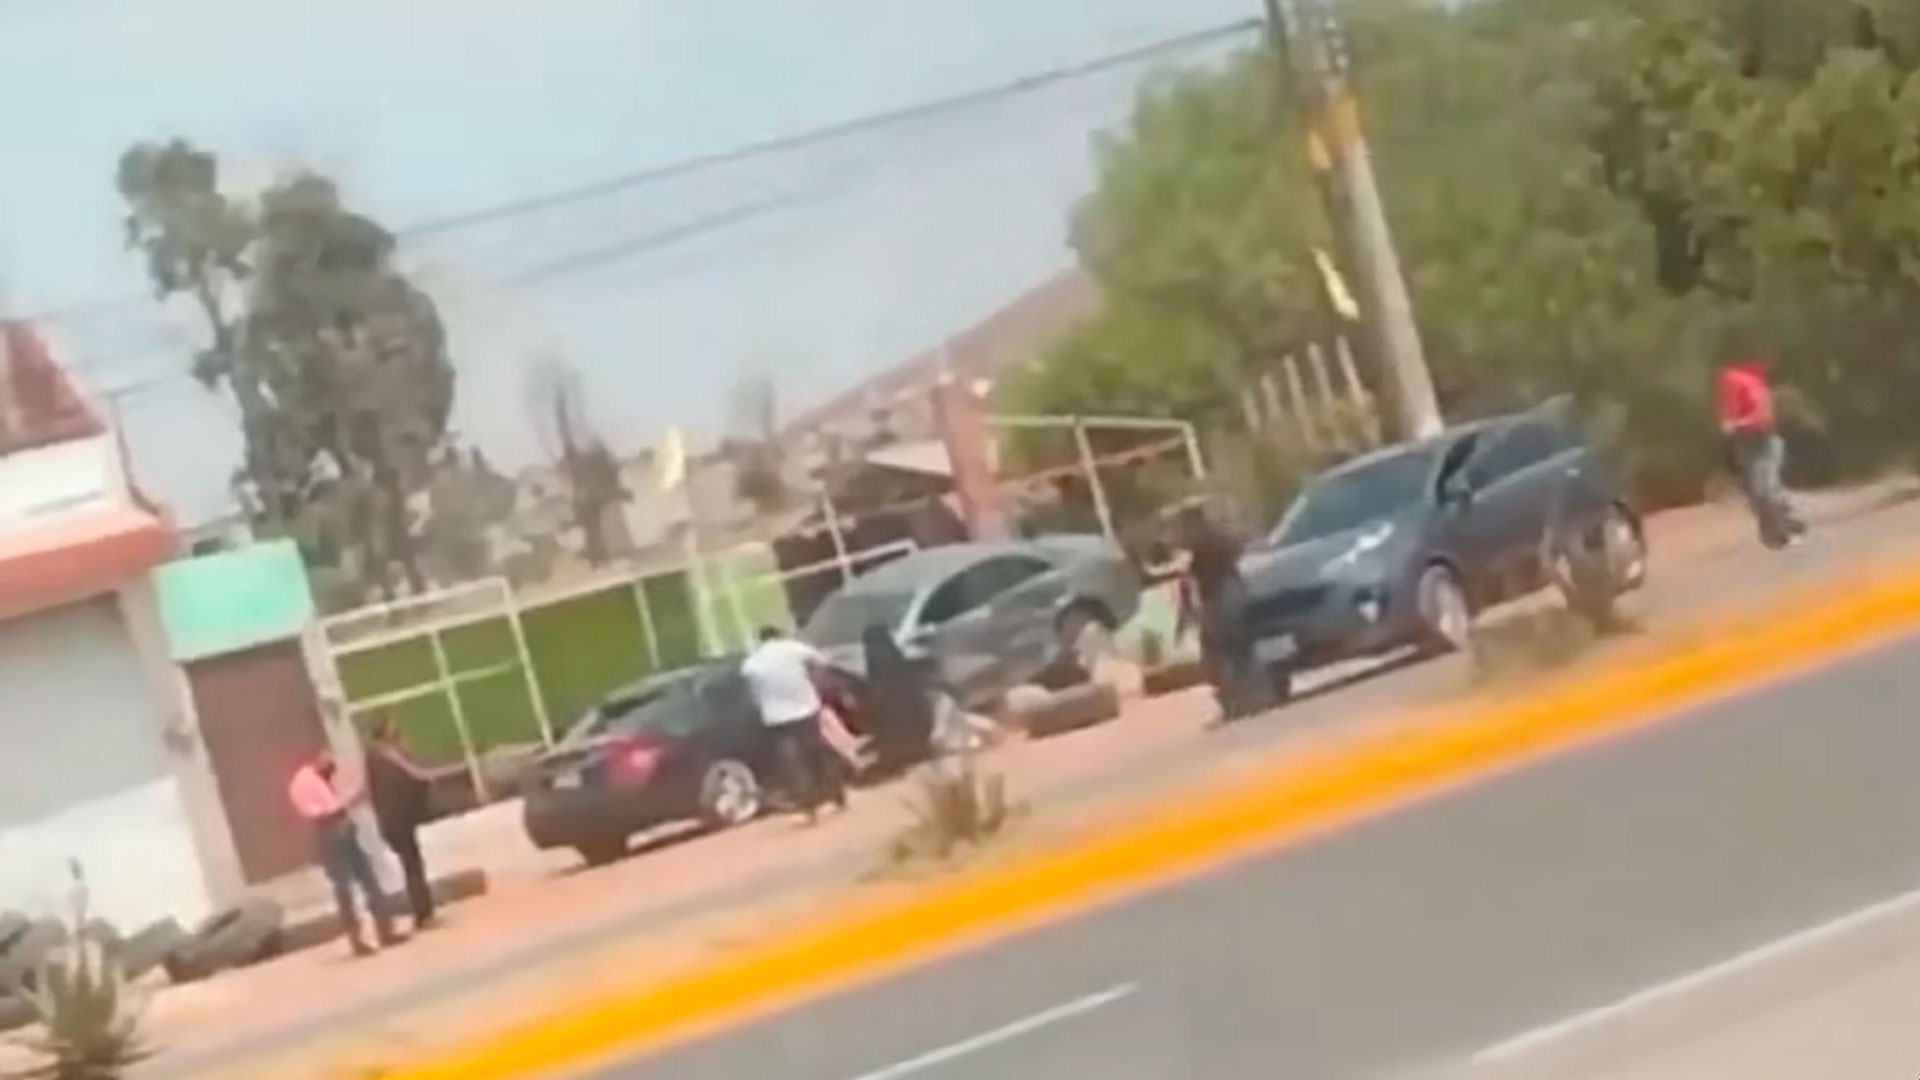 Zetas - Balacera de 3 días entre Zetas y CG, deja 46 muertos en Zacatecas. - Página 2 QD63YBFNS5CHTDGKQW2BZNNB4M